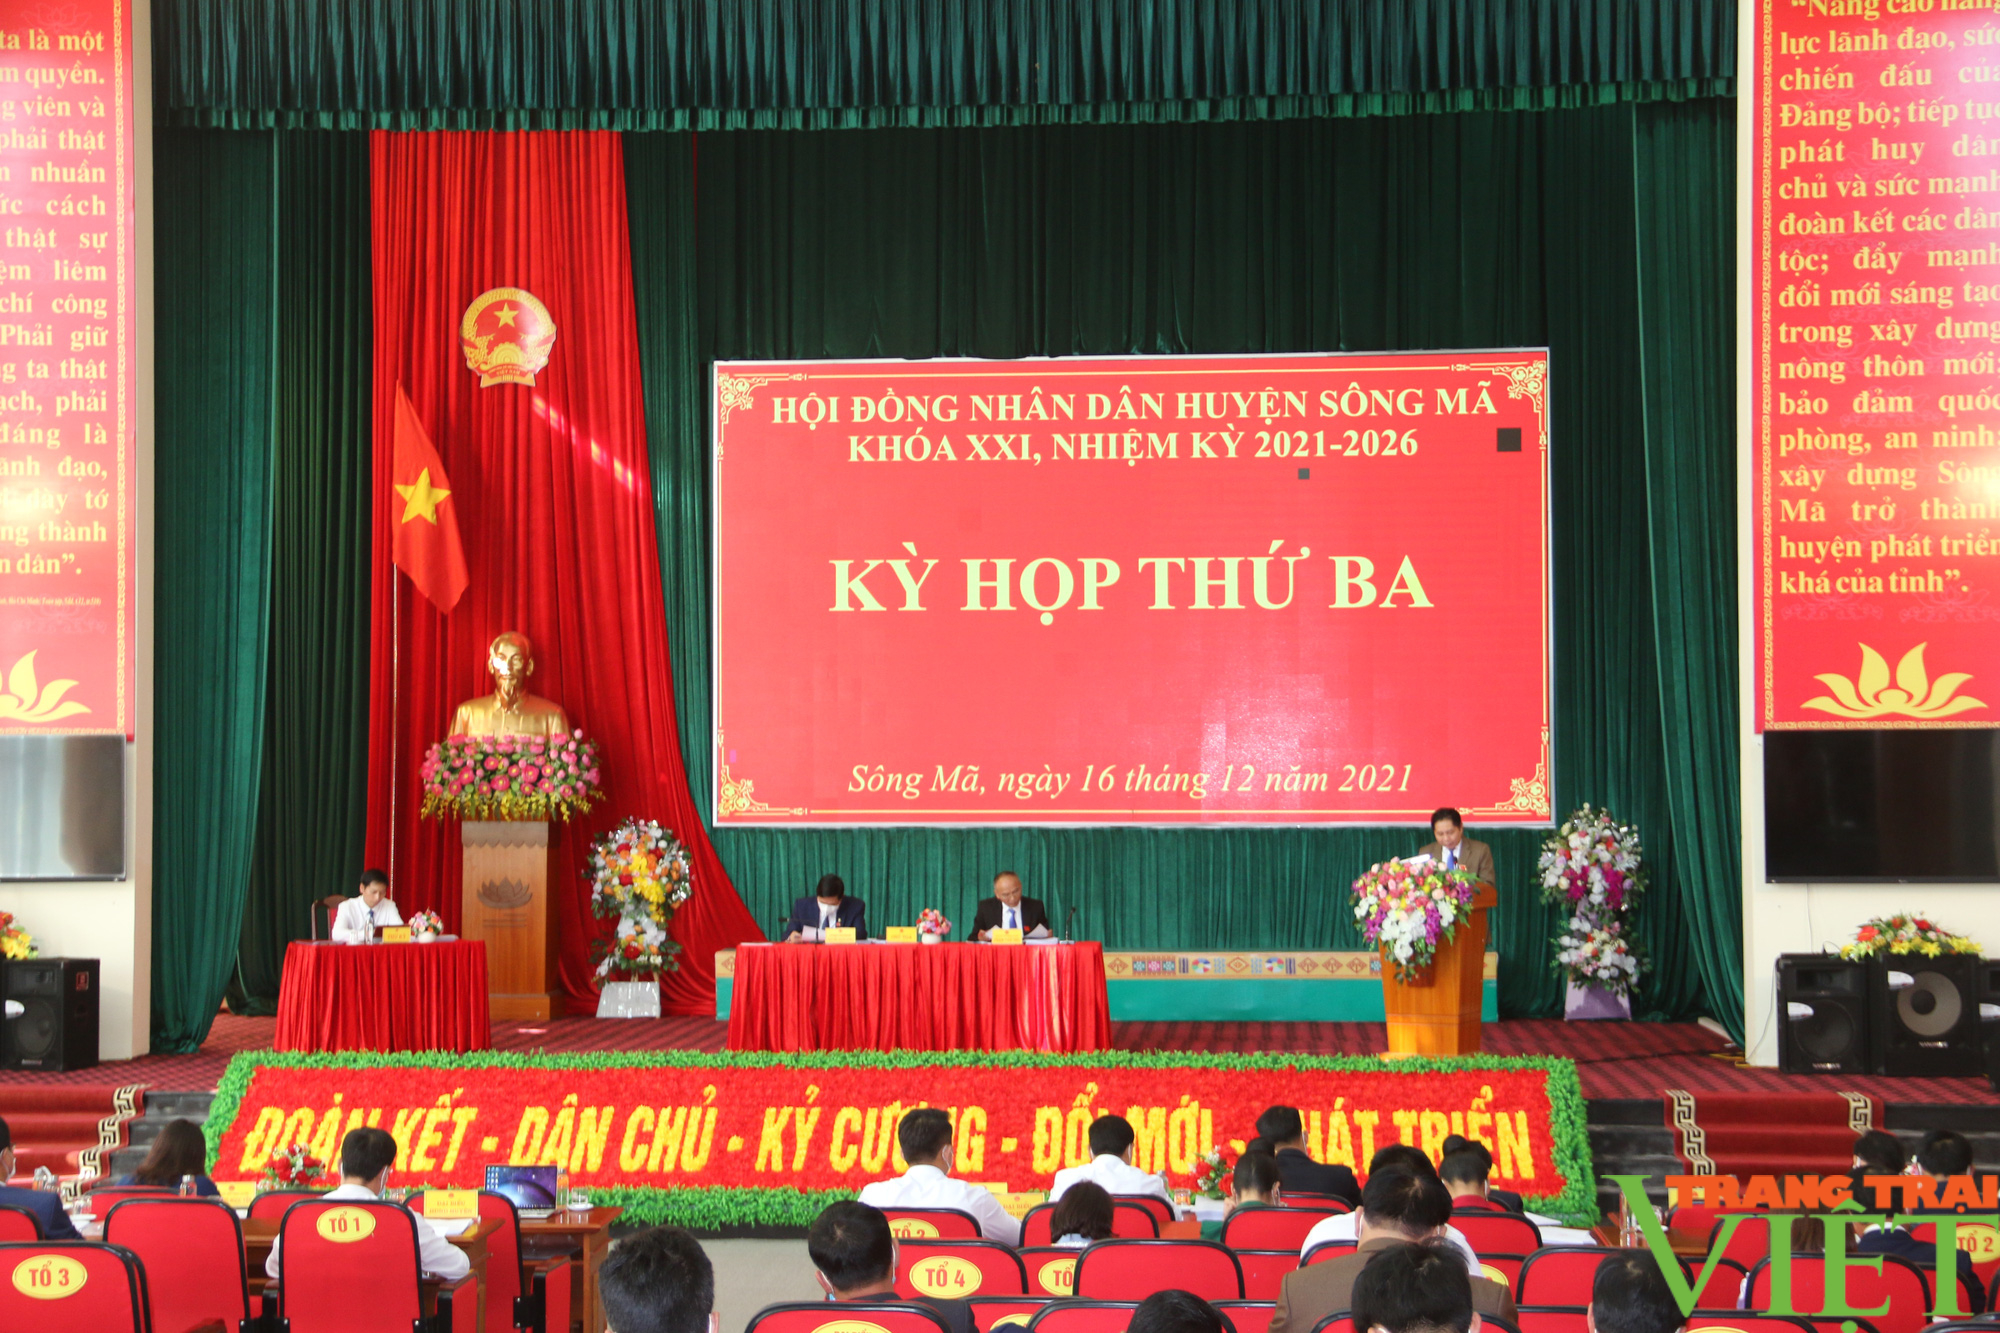 HĐND huyện Sông Mã (Sơn La): Tổ chức kỳ họp thứ 3, khoá XXI,  nhiệm kỳ 2021 – 2026 - Ảnh 7.